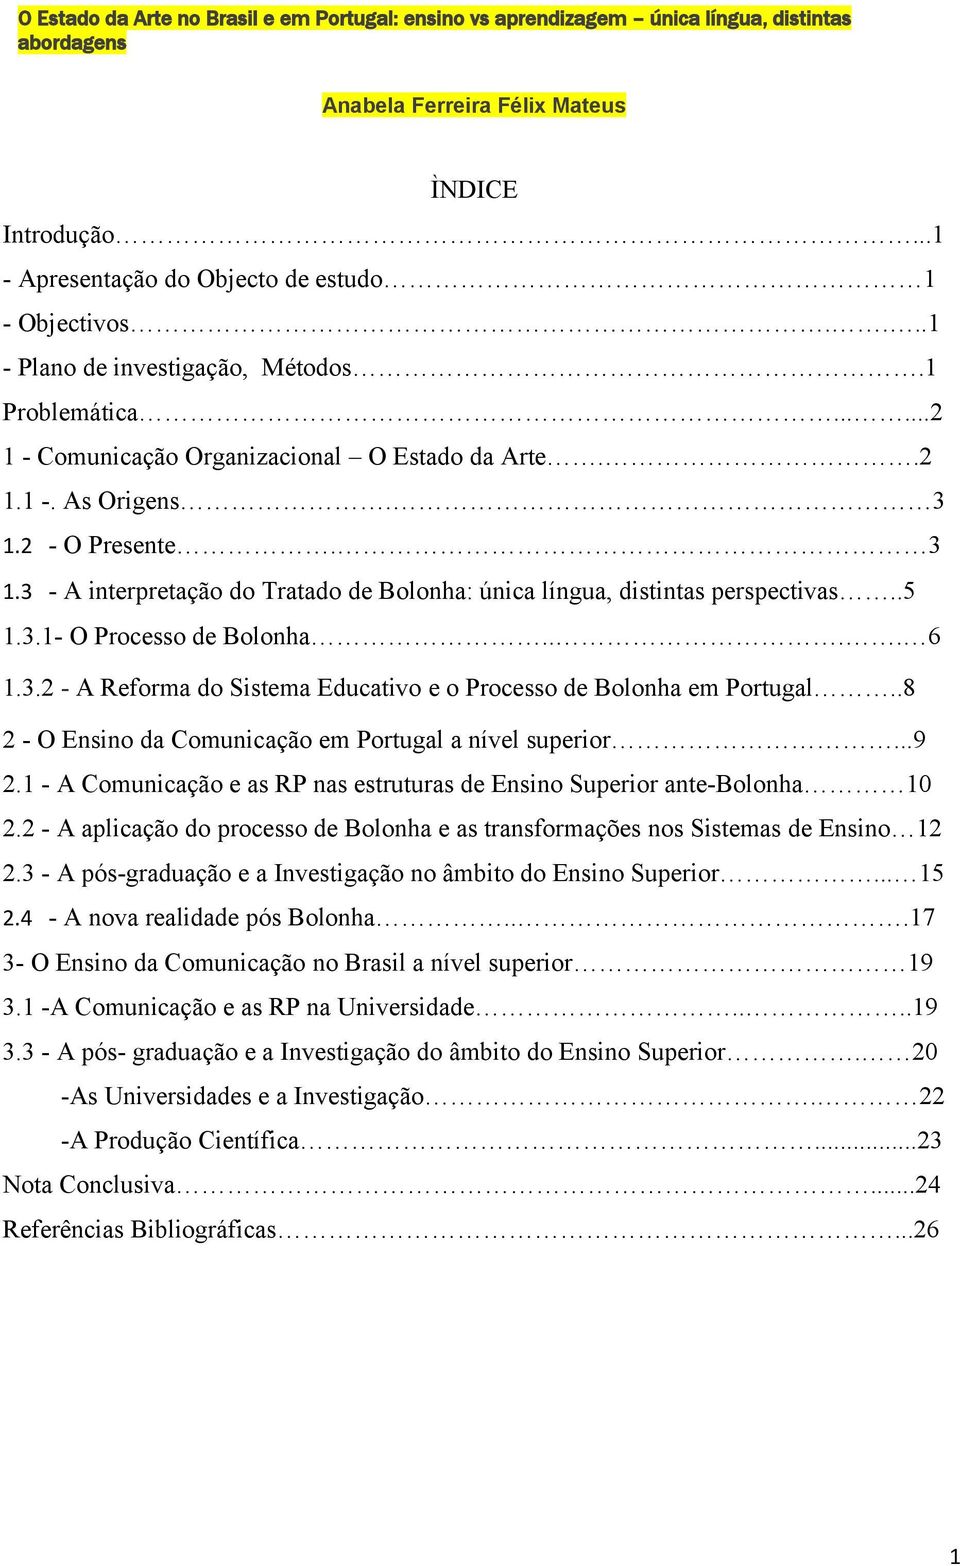 2 - O Presente. 3 1.3 - A interpretação do Tratado de Bolonha: única língua, distintas perspectivas..5 1.3.1- O Processo de Bolonha.... 6 1.3.2 - A Reforma do Sistema Educativo e o Processo de Bolonha em Portugal.